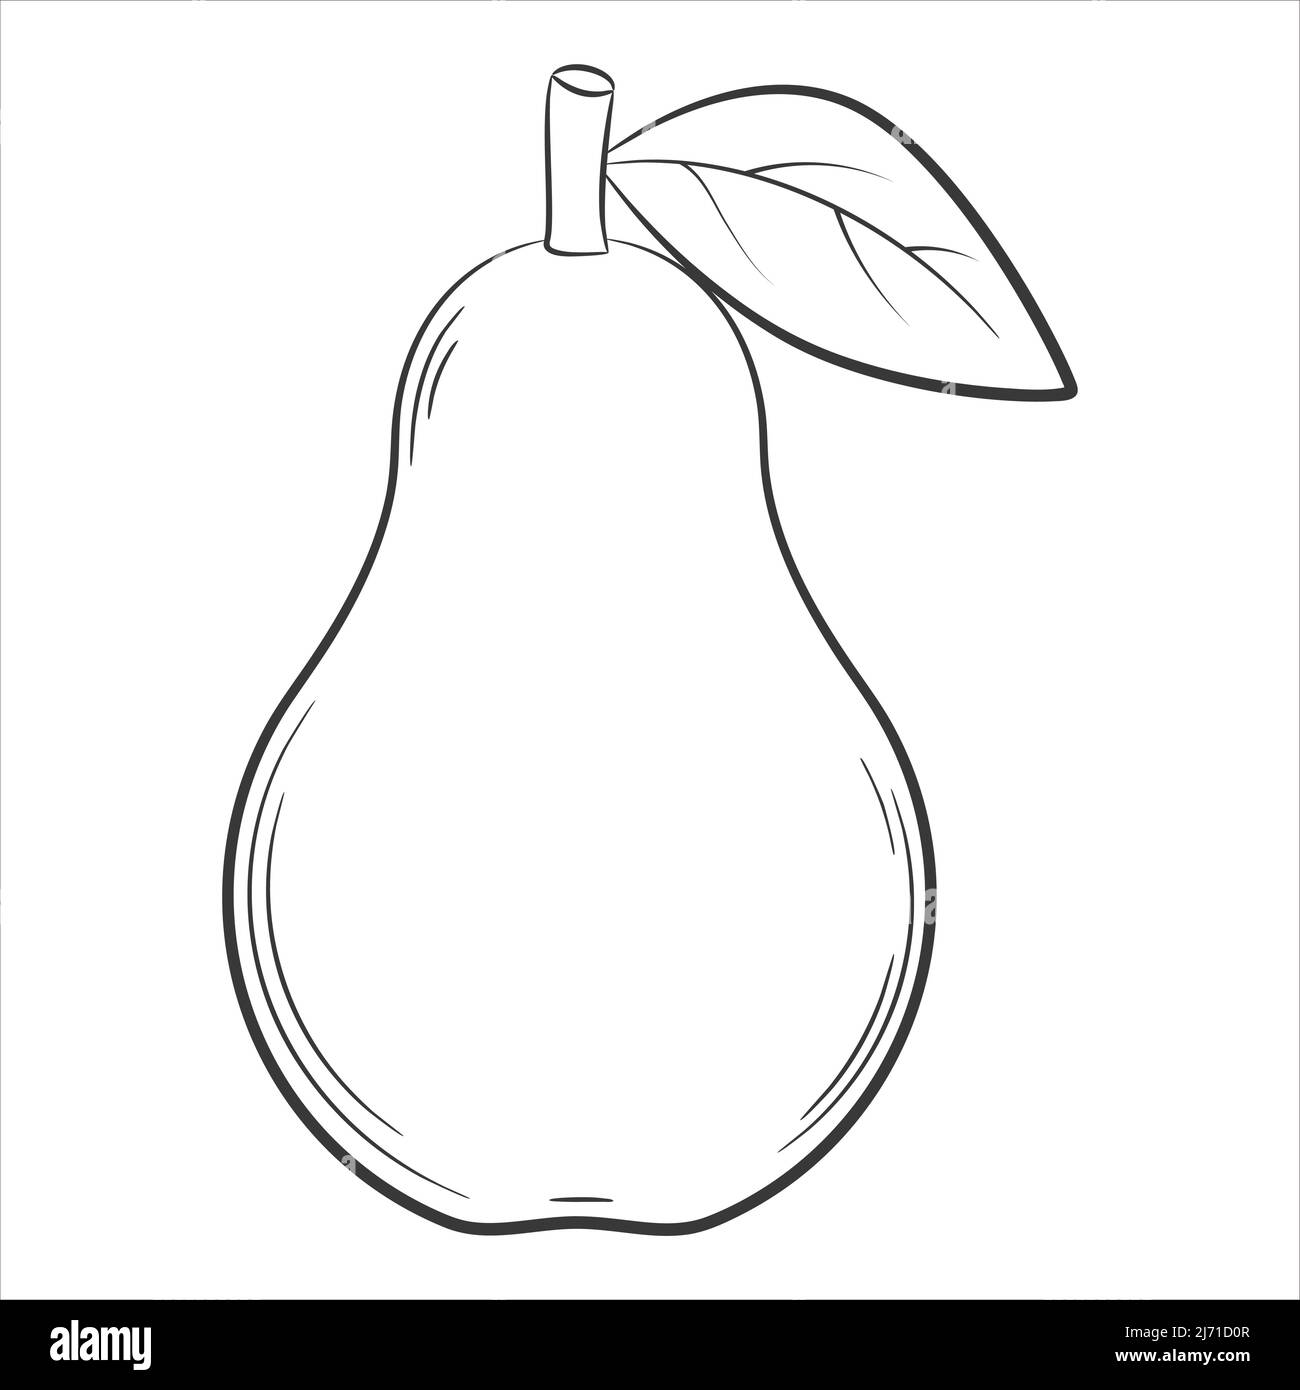 Birnenfrucht im linearen Stil. Schwarz-Weiß Vektor dekoratives Element, von Hand gezeichnet.isoliert auf weißem Hintergrund Stock Vektor